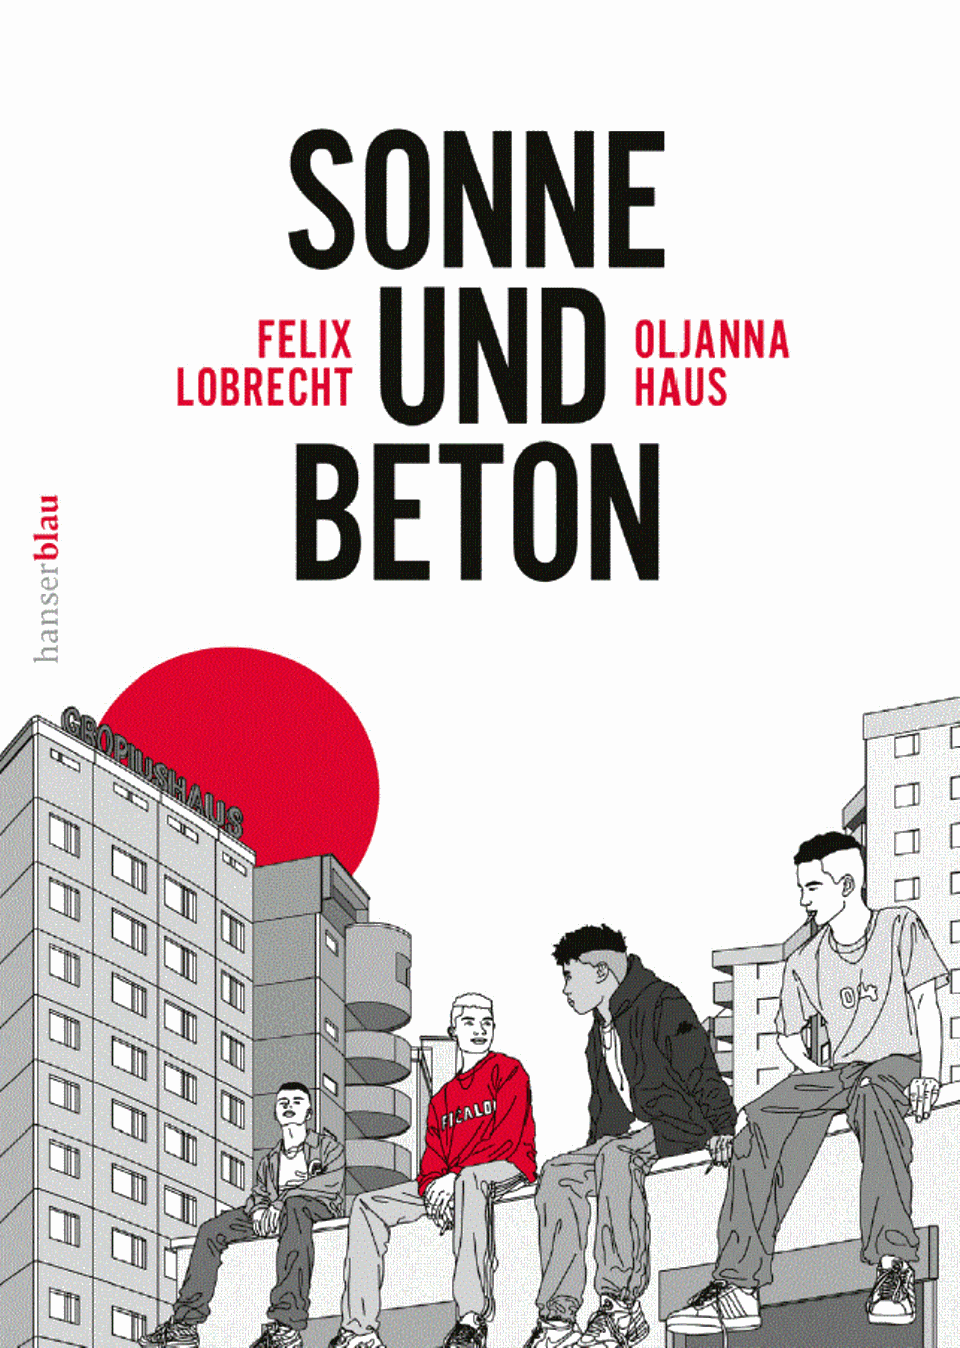 Graphic Novel "Sonne und Beton"